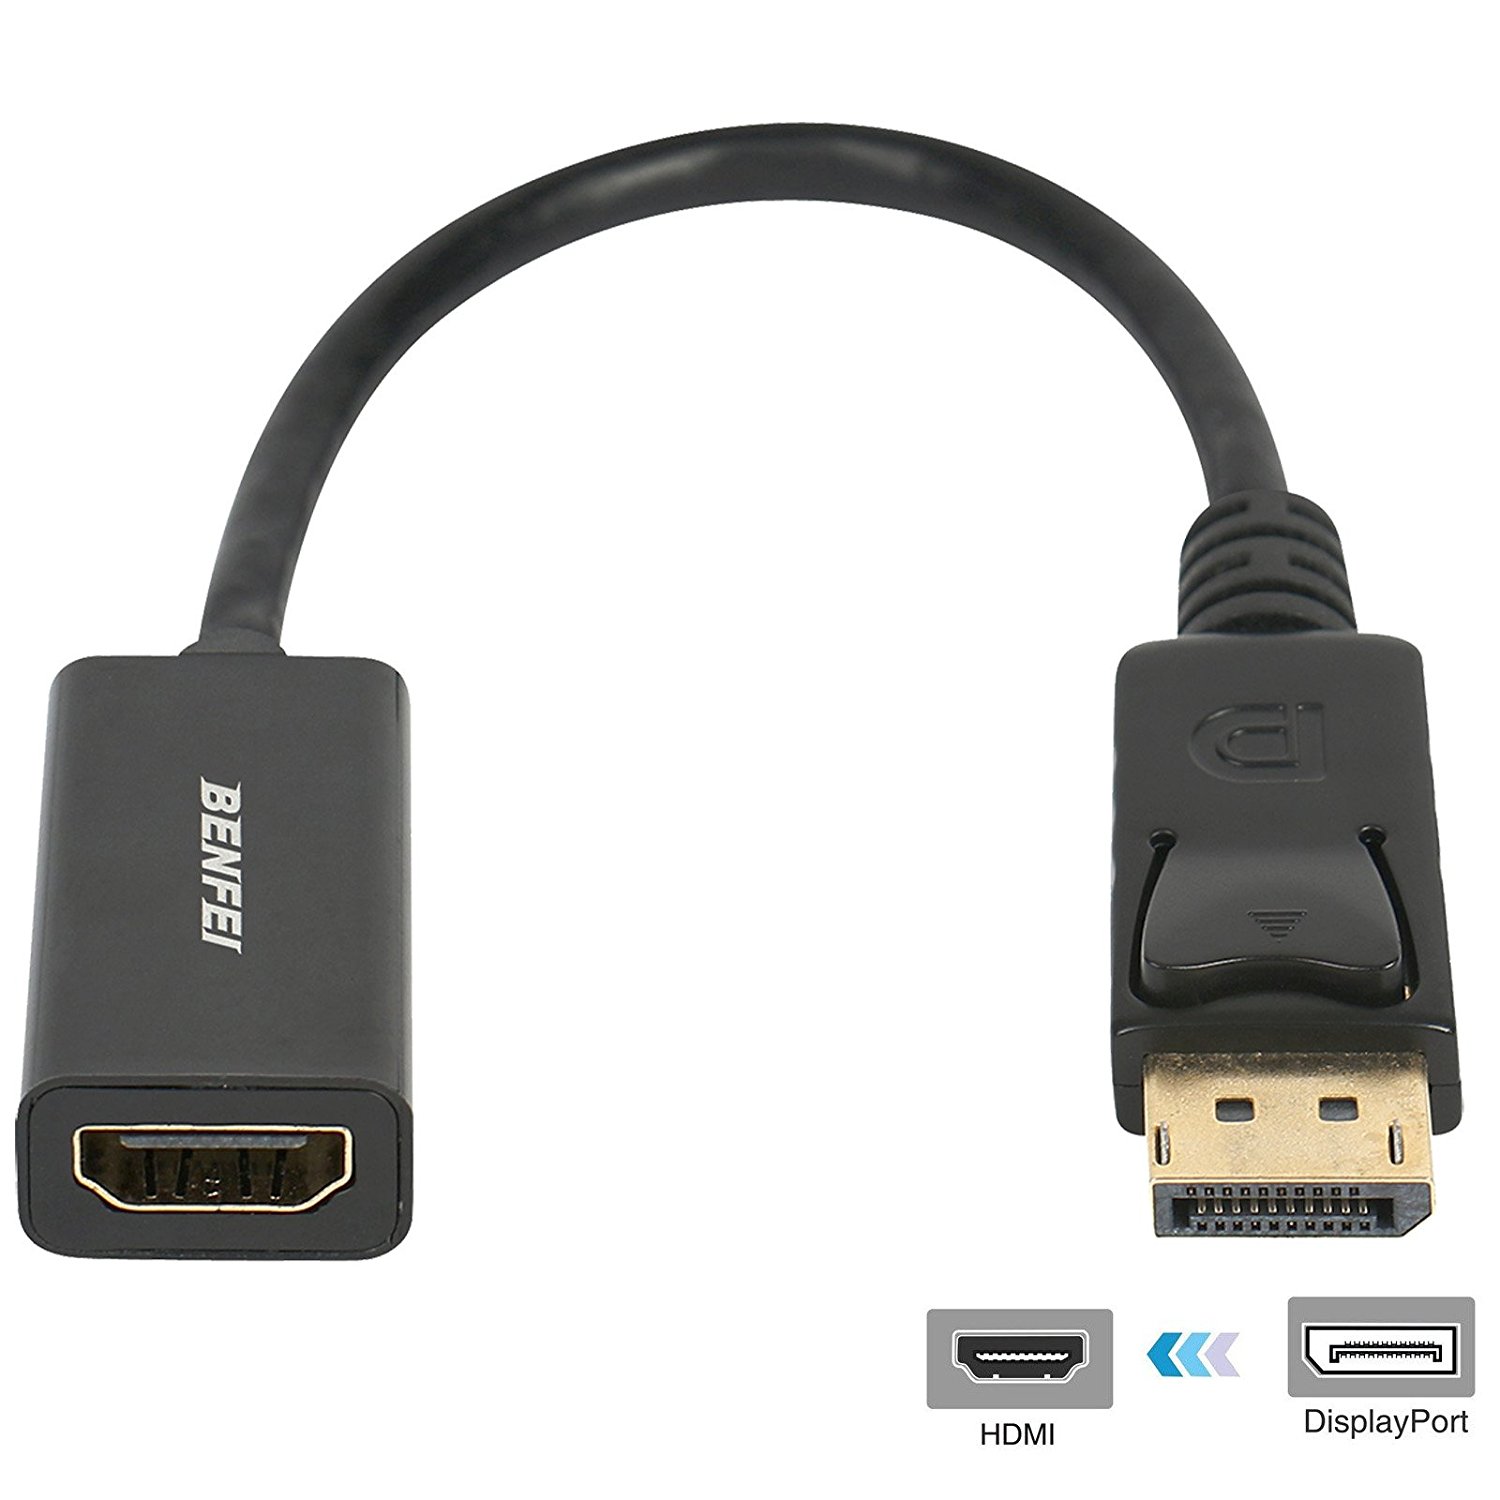 DisplayPort-to-HDMI connector